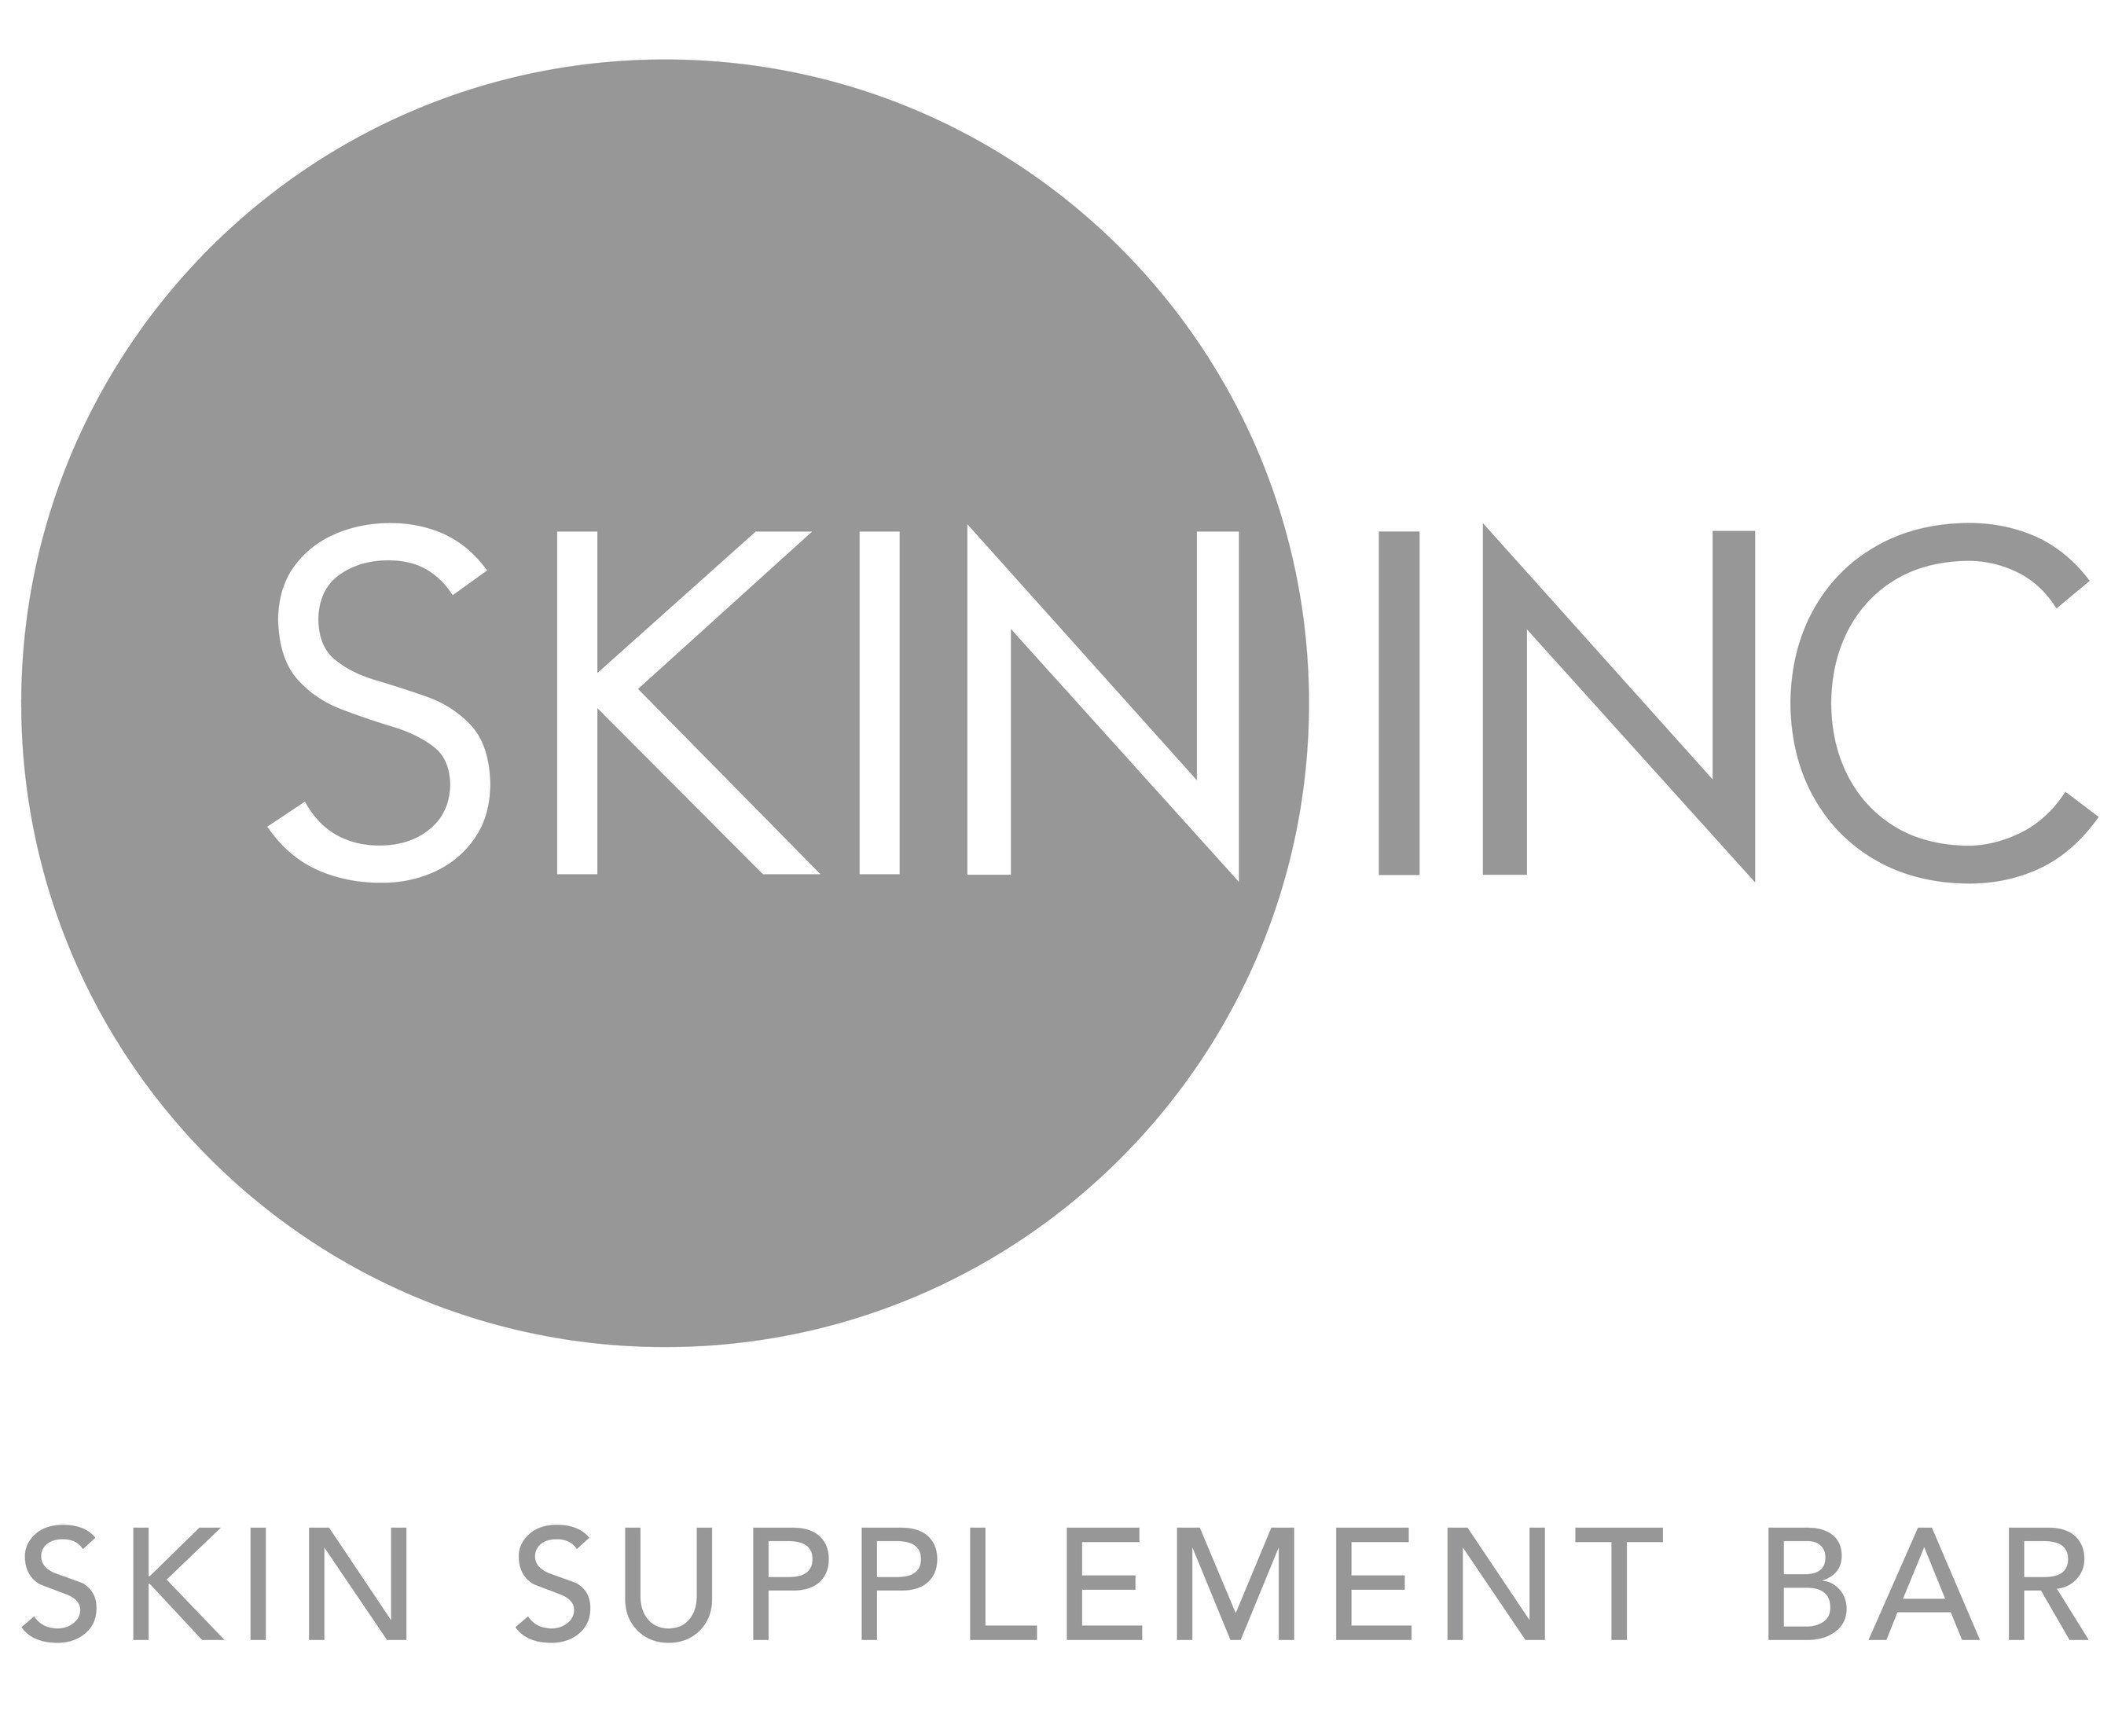 Skin Inc Logo - Skin Inc, Skin Supplement Bar, The Leader In Customizable Skincare